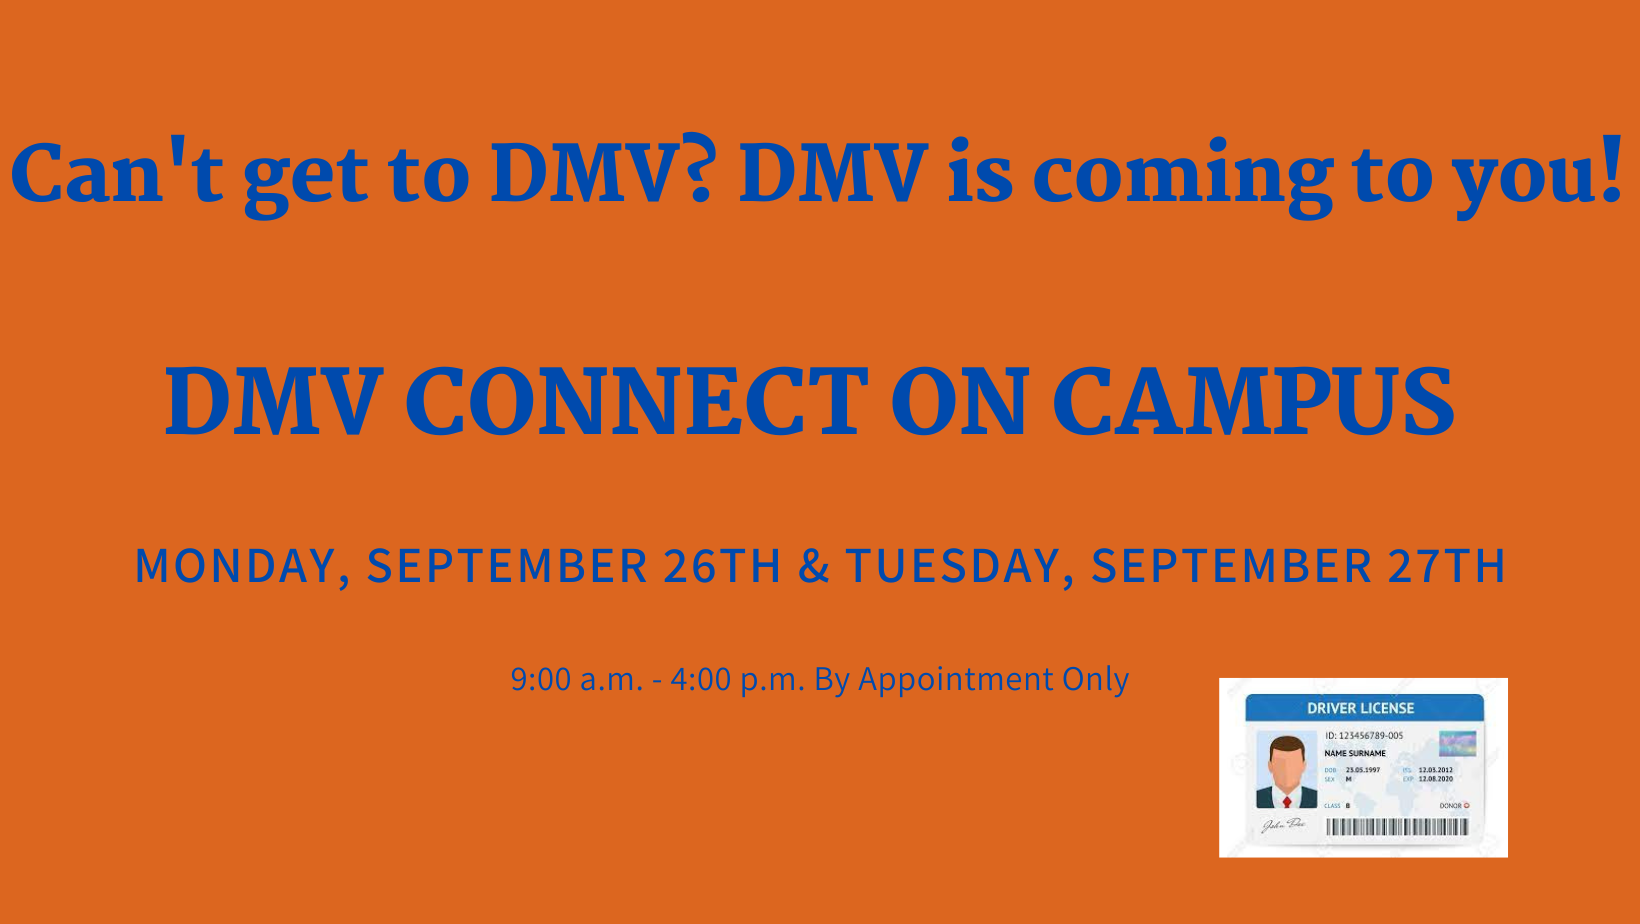 DMV will be at JMU September 26 & 27